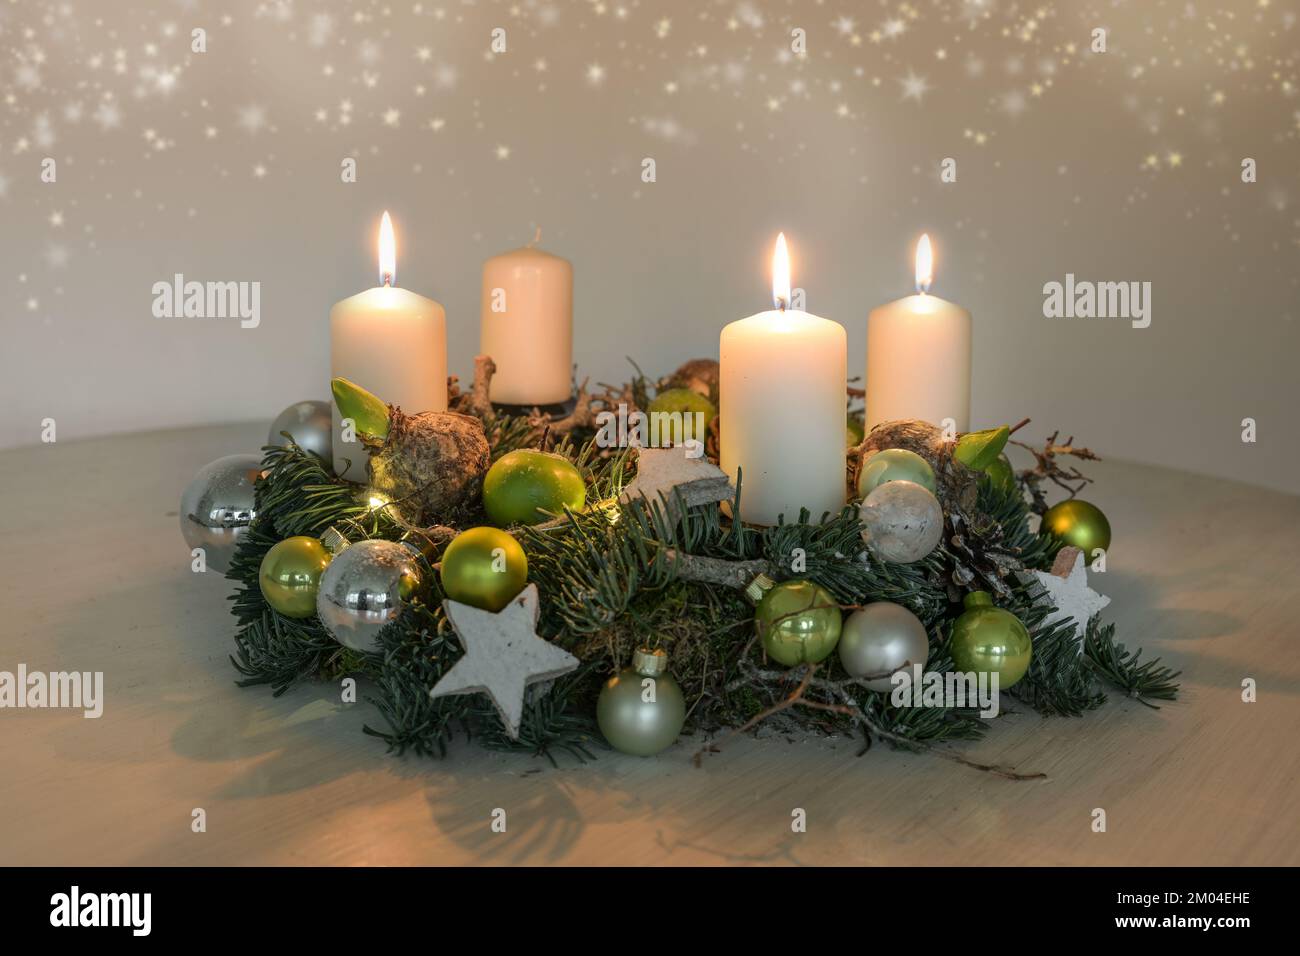 Terzo Avvento, corona con tre candele bianche brucianti e verde decorazione di Natale su un tavolo, arredamento per la terza Domenica, copia spazio, selecte Foto Stock